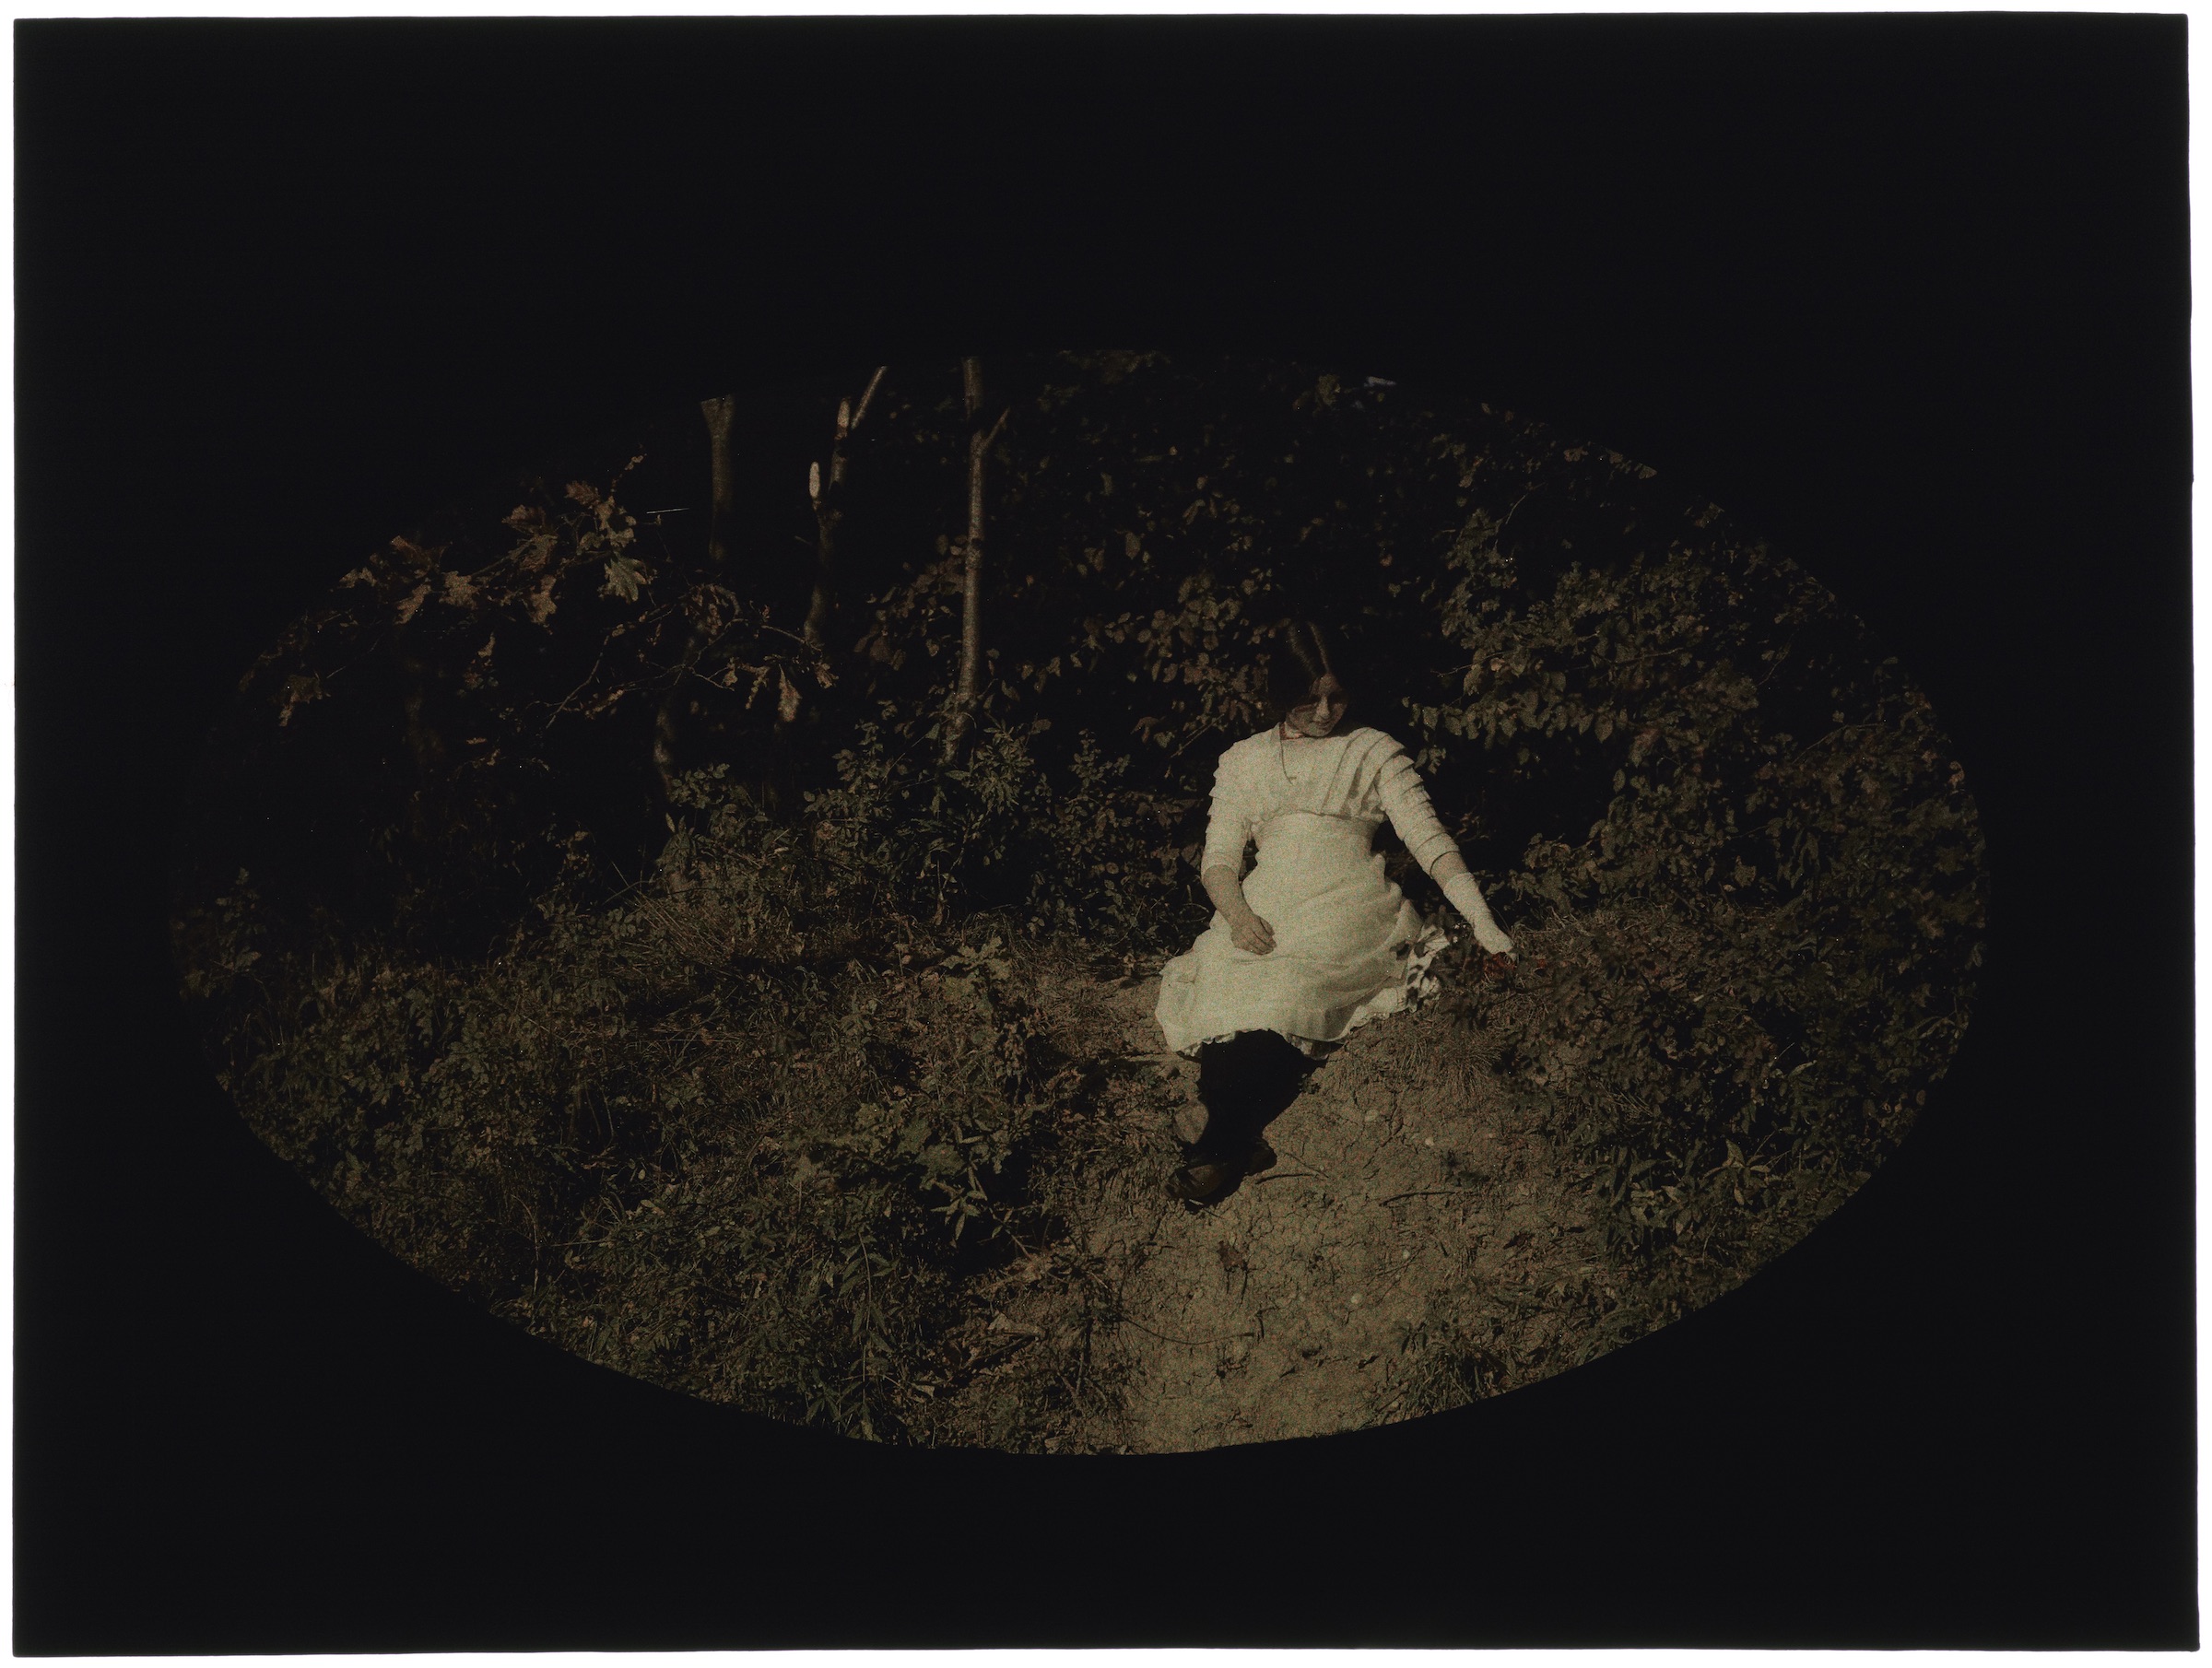 Femme en blanc sur un talus de la forêt